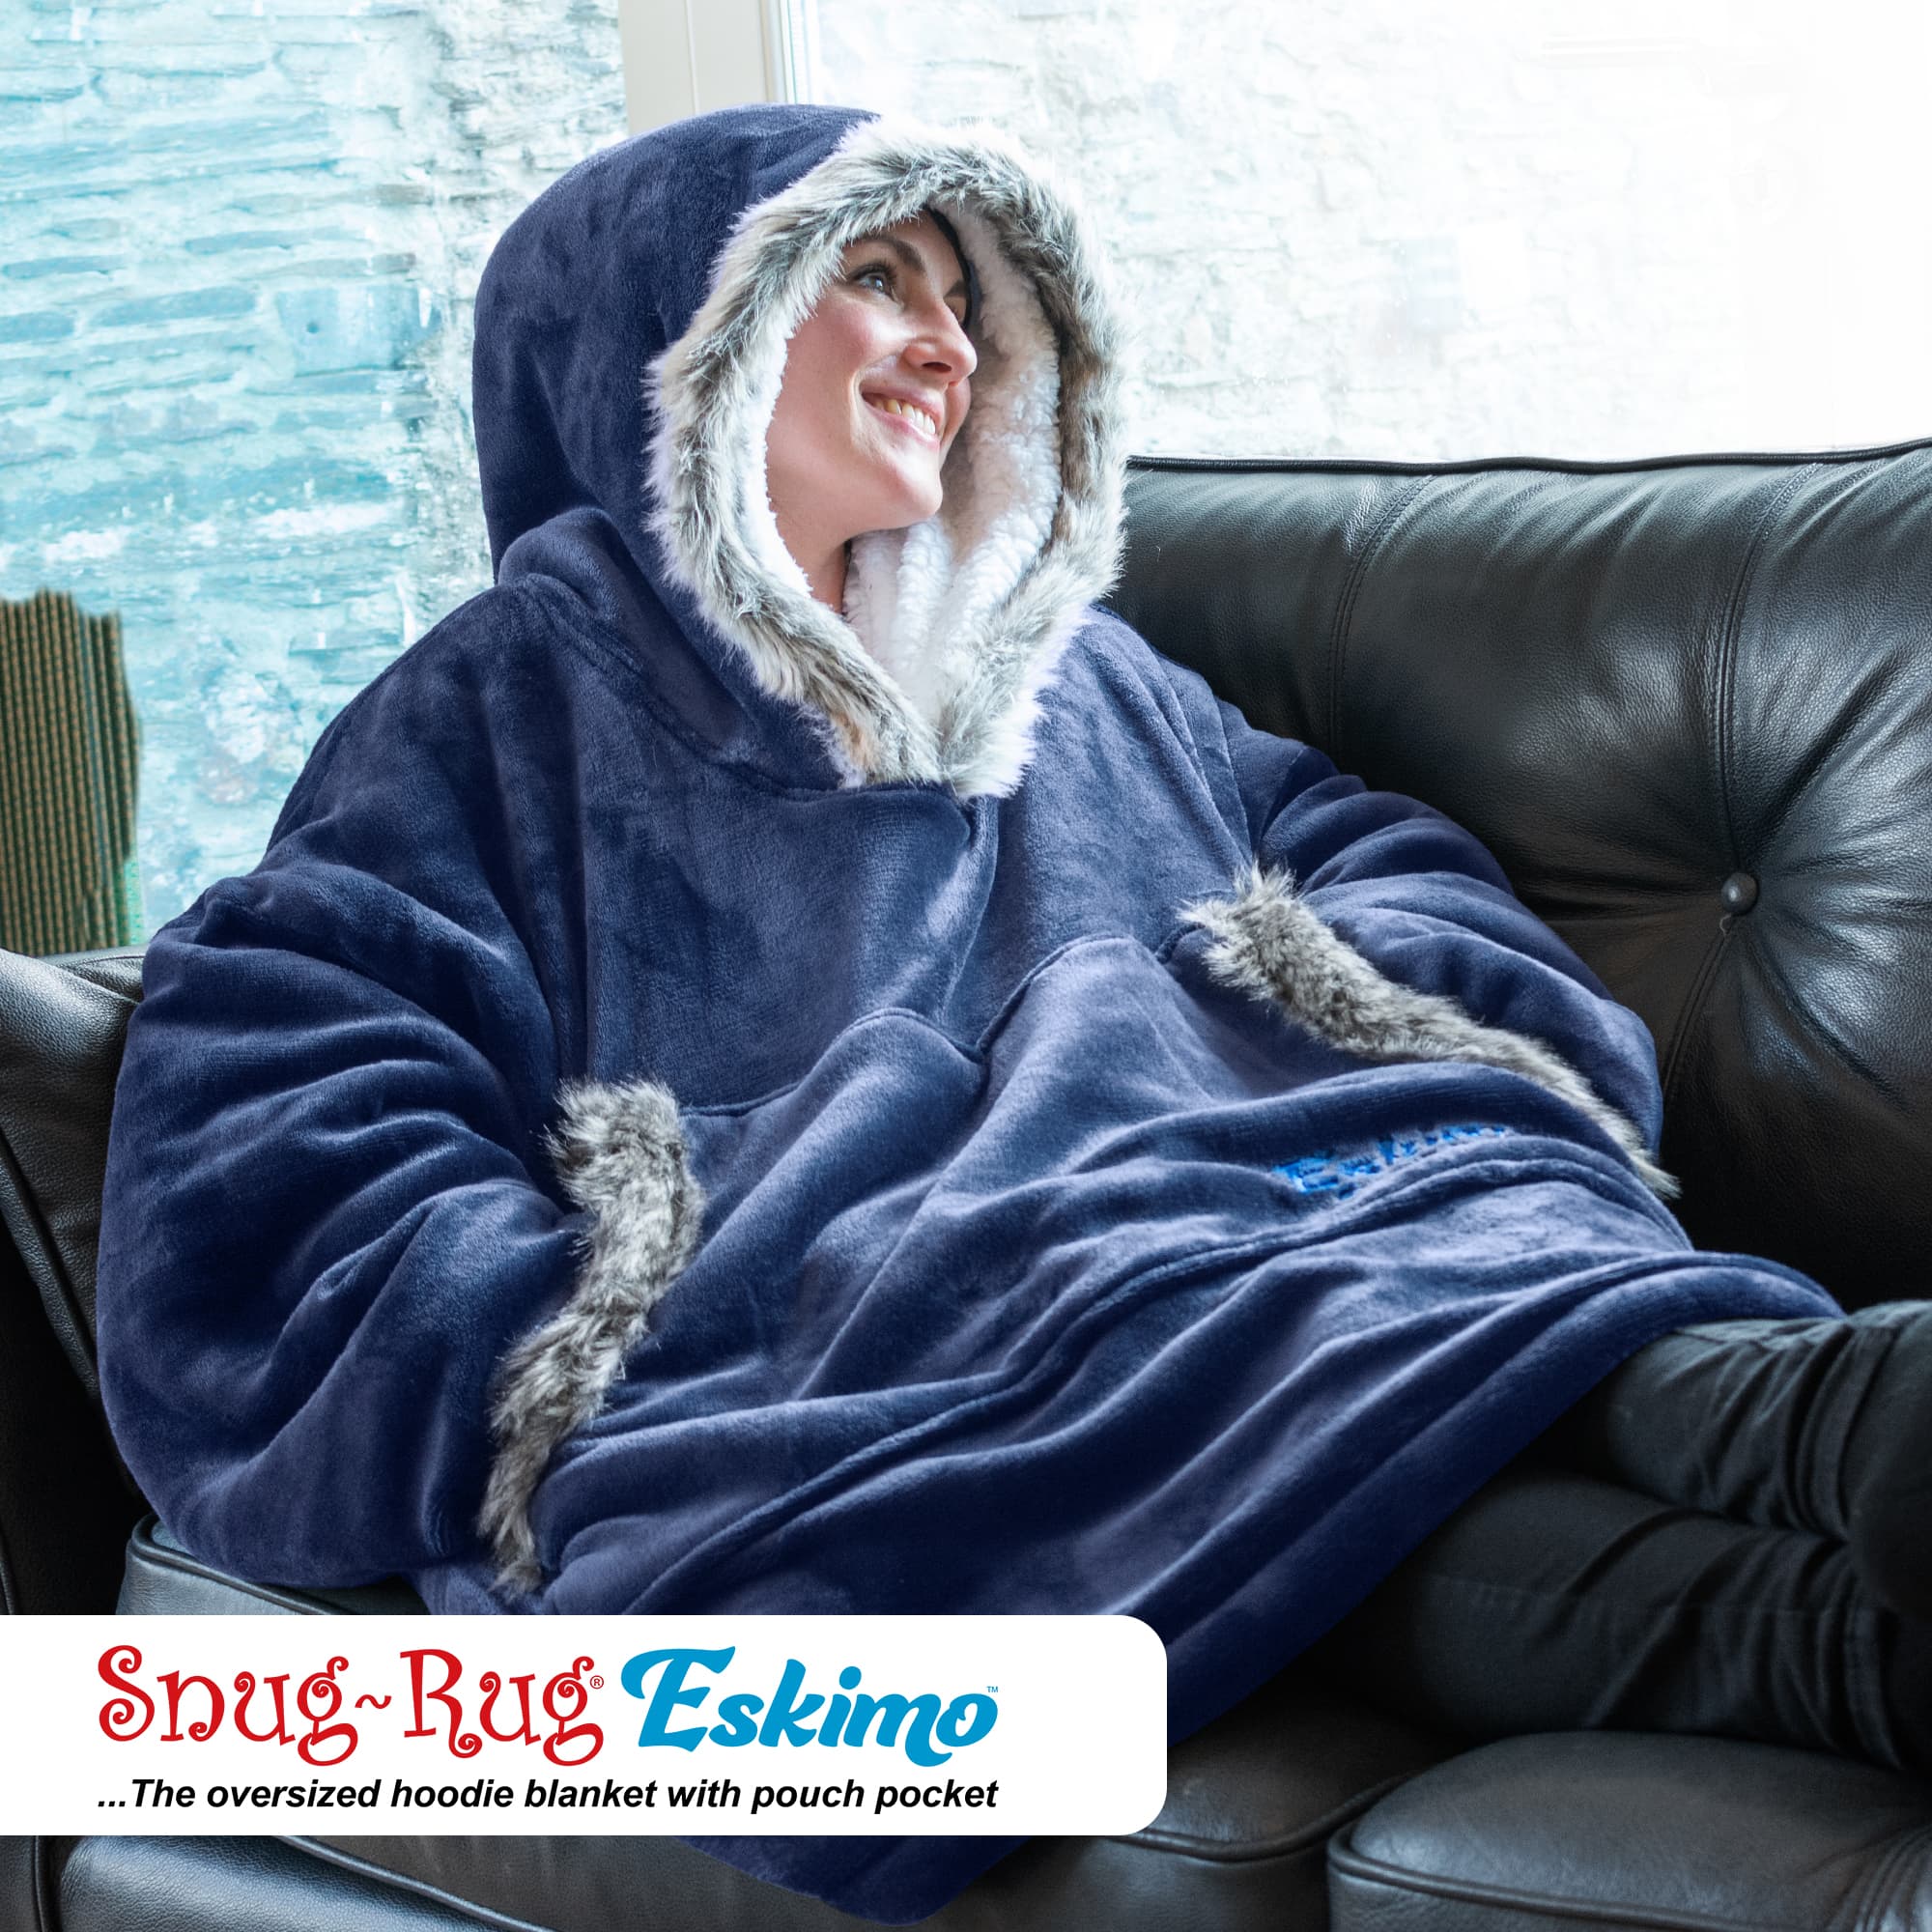 Nightbex® Original Blanket Hoodie - Oversized Super Soft Hoodie